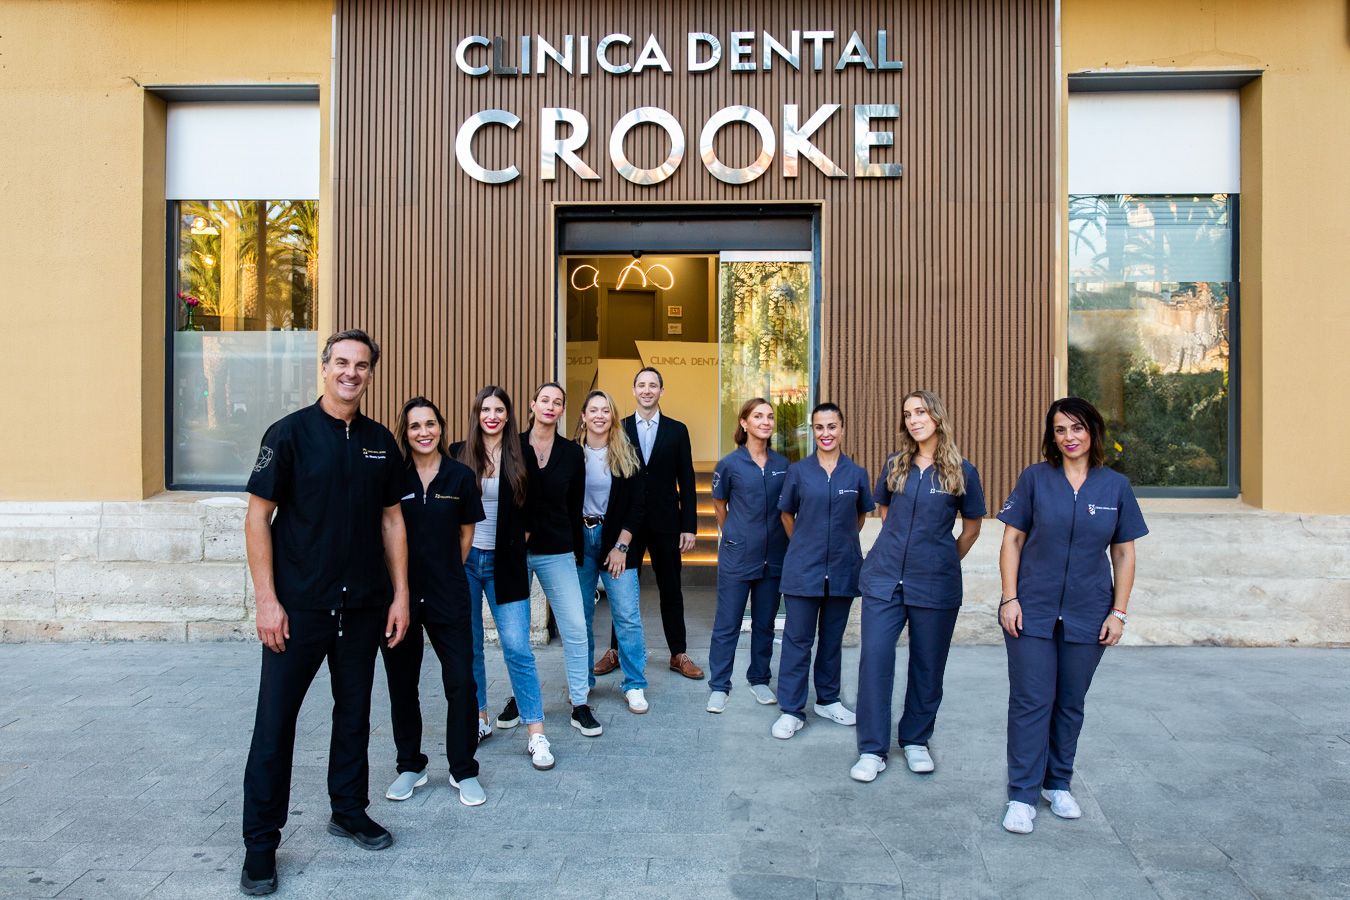 El equipo interdisciplinar del grupo dental Crooke trabaja con los últimos avances tecnológicos.